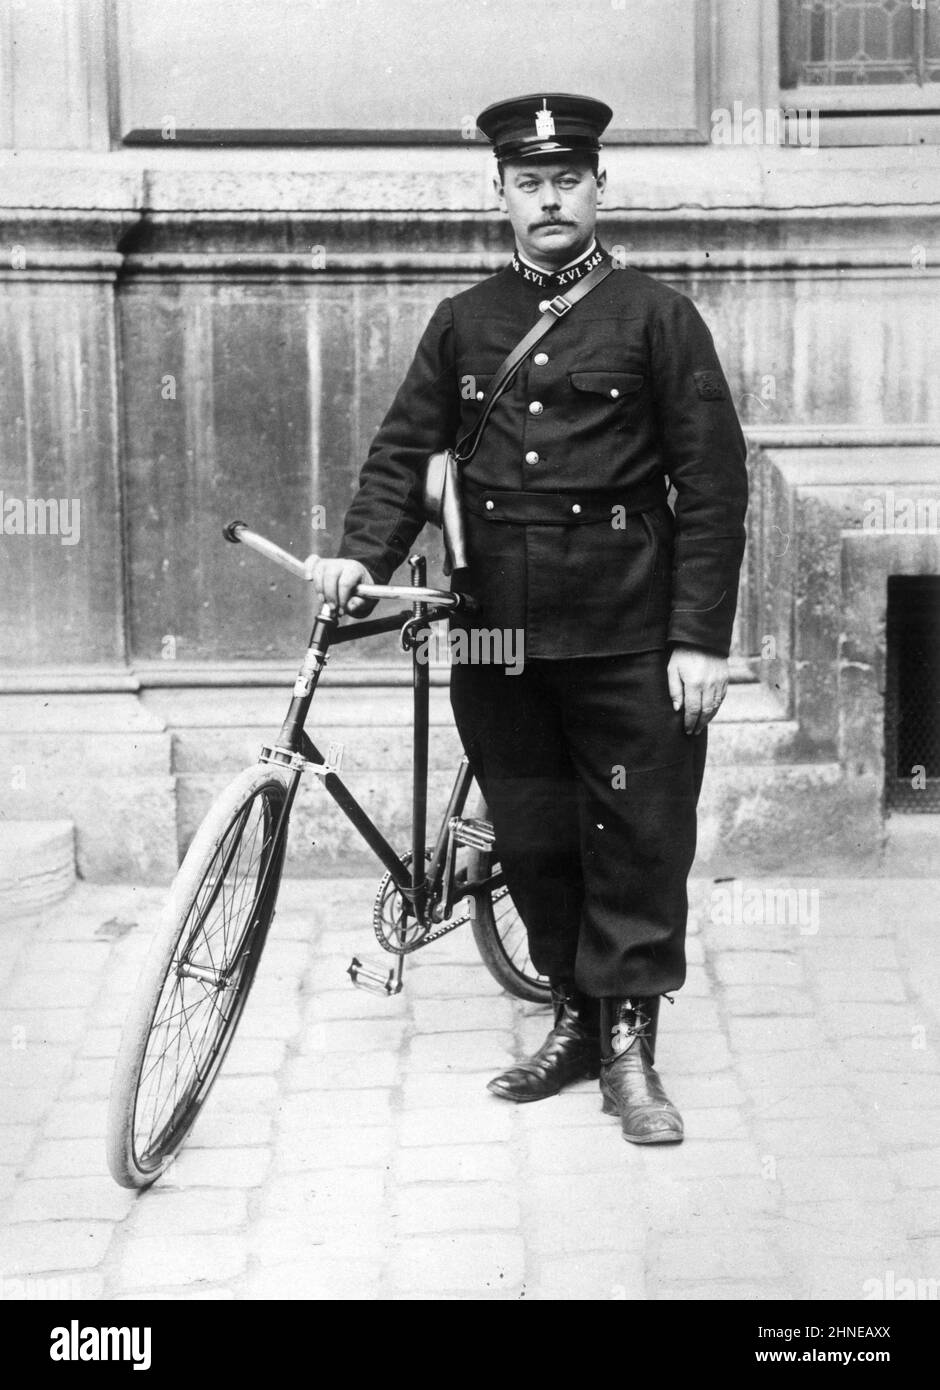 Agent cycliste parisien de M. Lepine - photographie - L'agent cycliste à été créé par le Préfet de Police Louis Lépine en 1900 pour assurer une surveillance de nuit dans les quartiers de Paris. Stock Photo